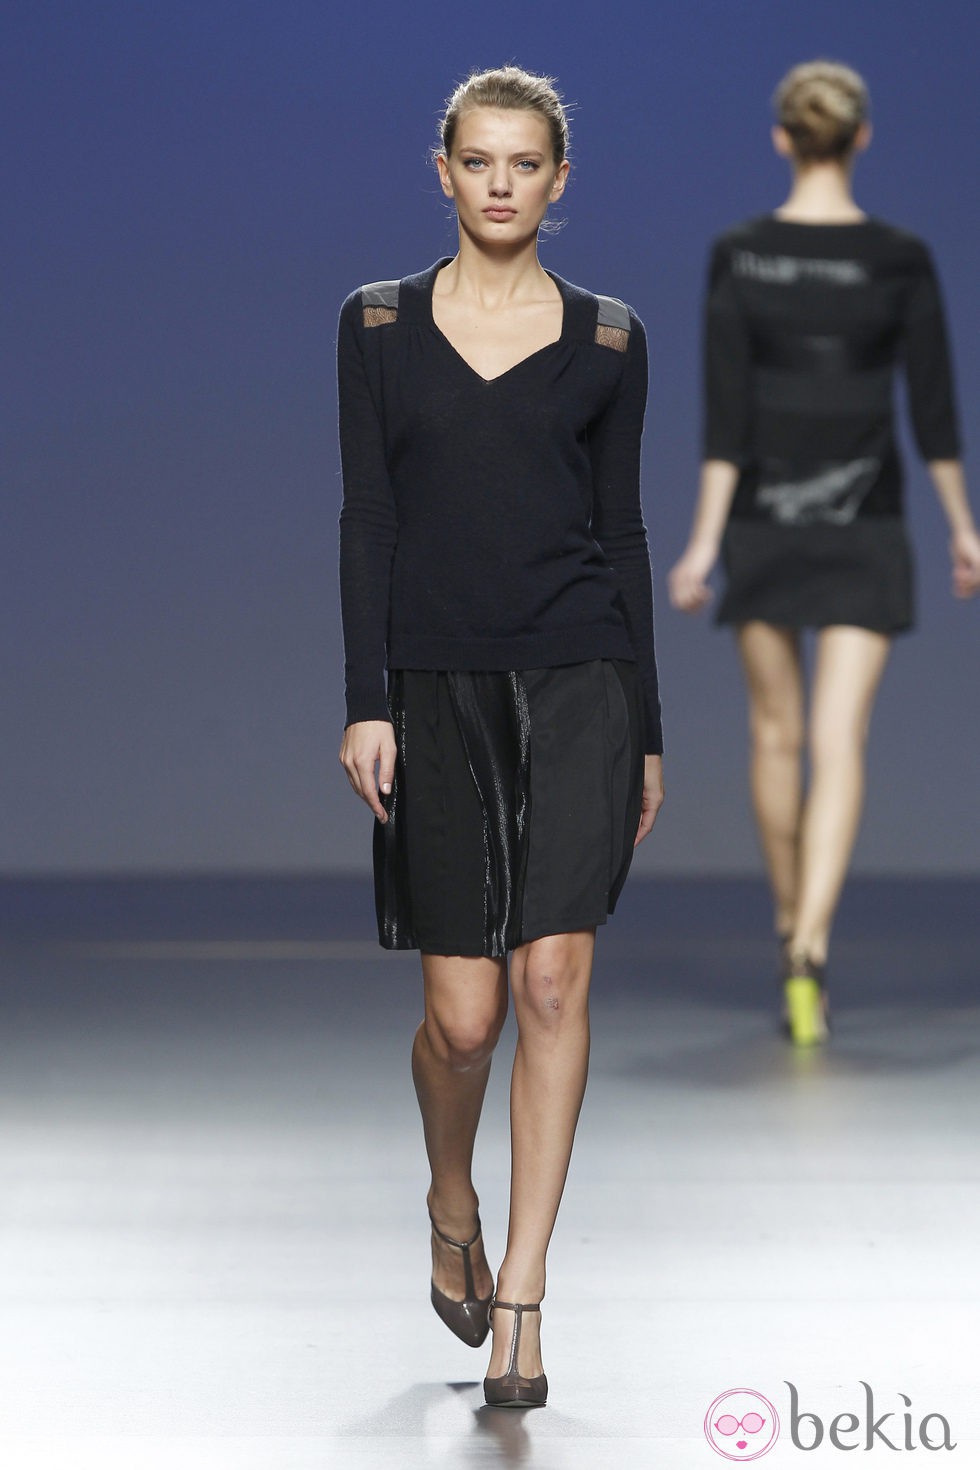 Falda negra y jersey de punto azul marino de Sita Murt en la Fashion Week Madrid